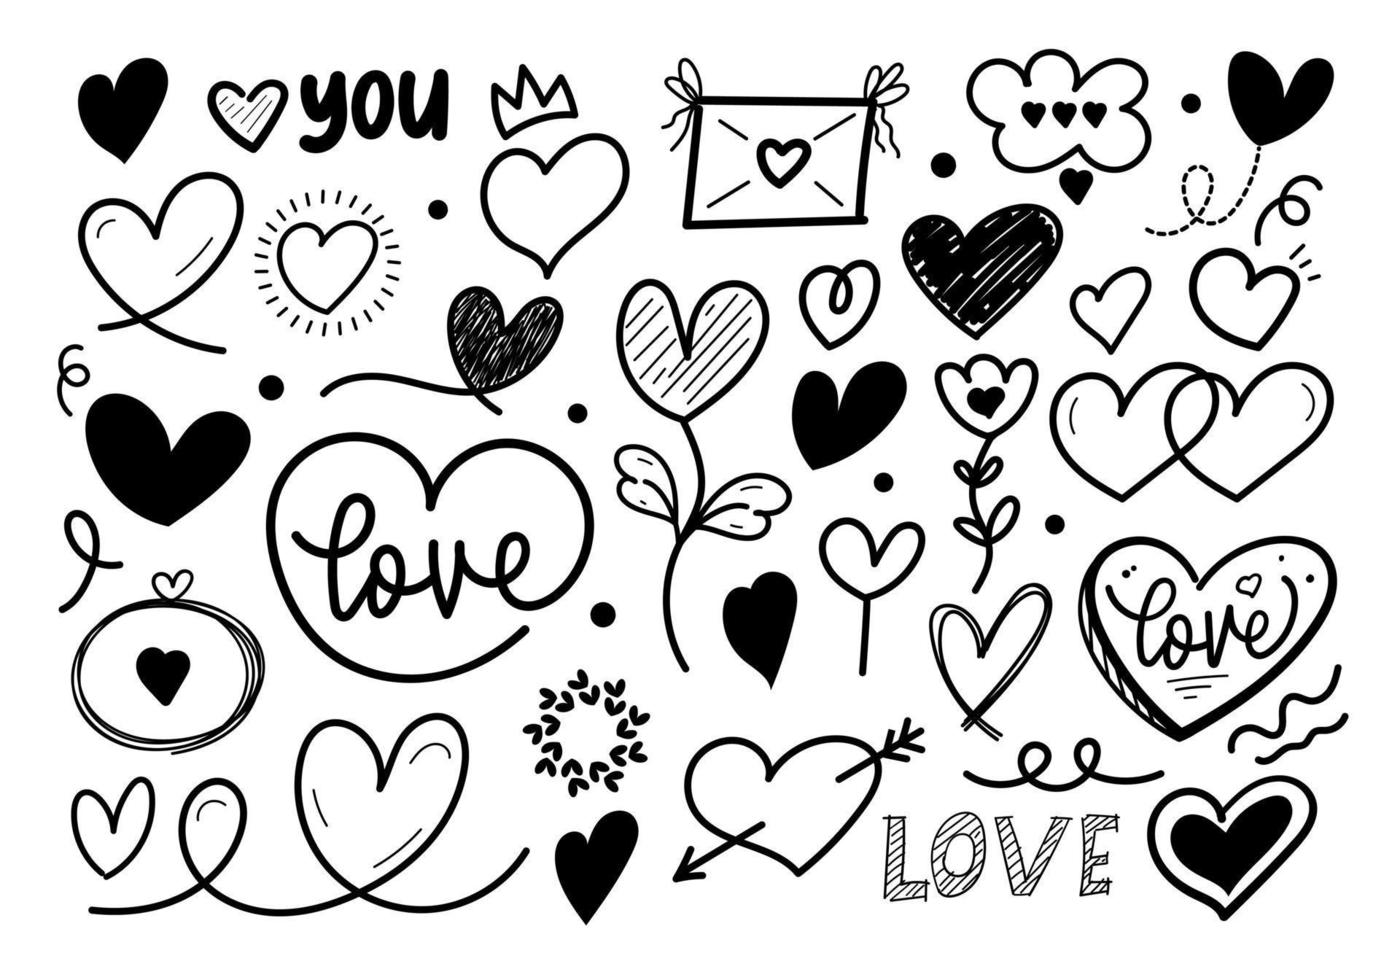 coeurs coeurs dessinés à la main amour saint valentin doodle gribouillis dessin au trait noir croquis icône ensemble illustration vectorielle vecteur